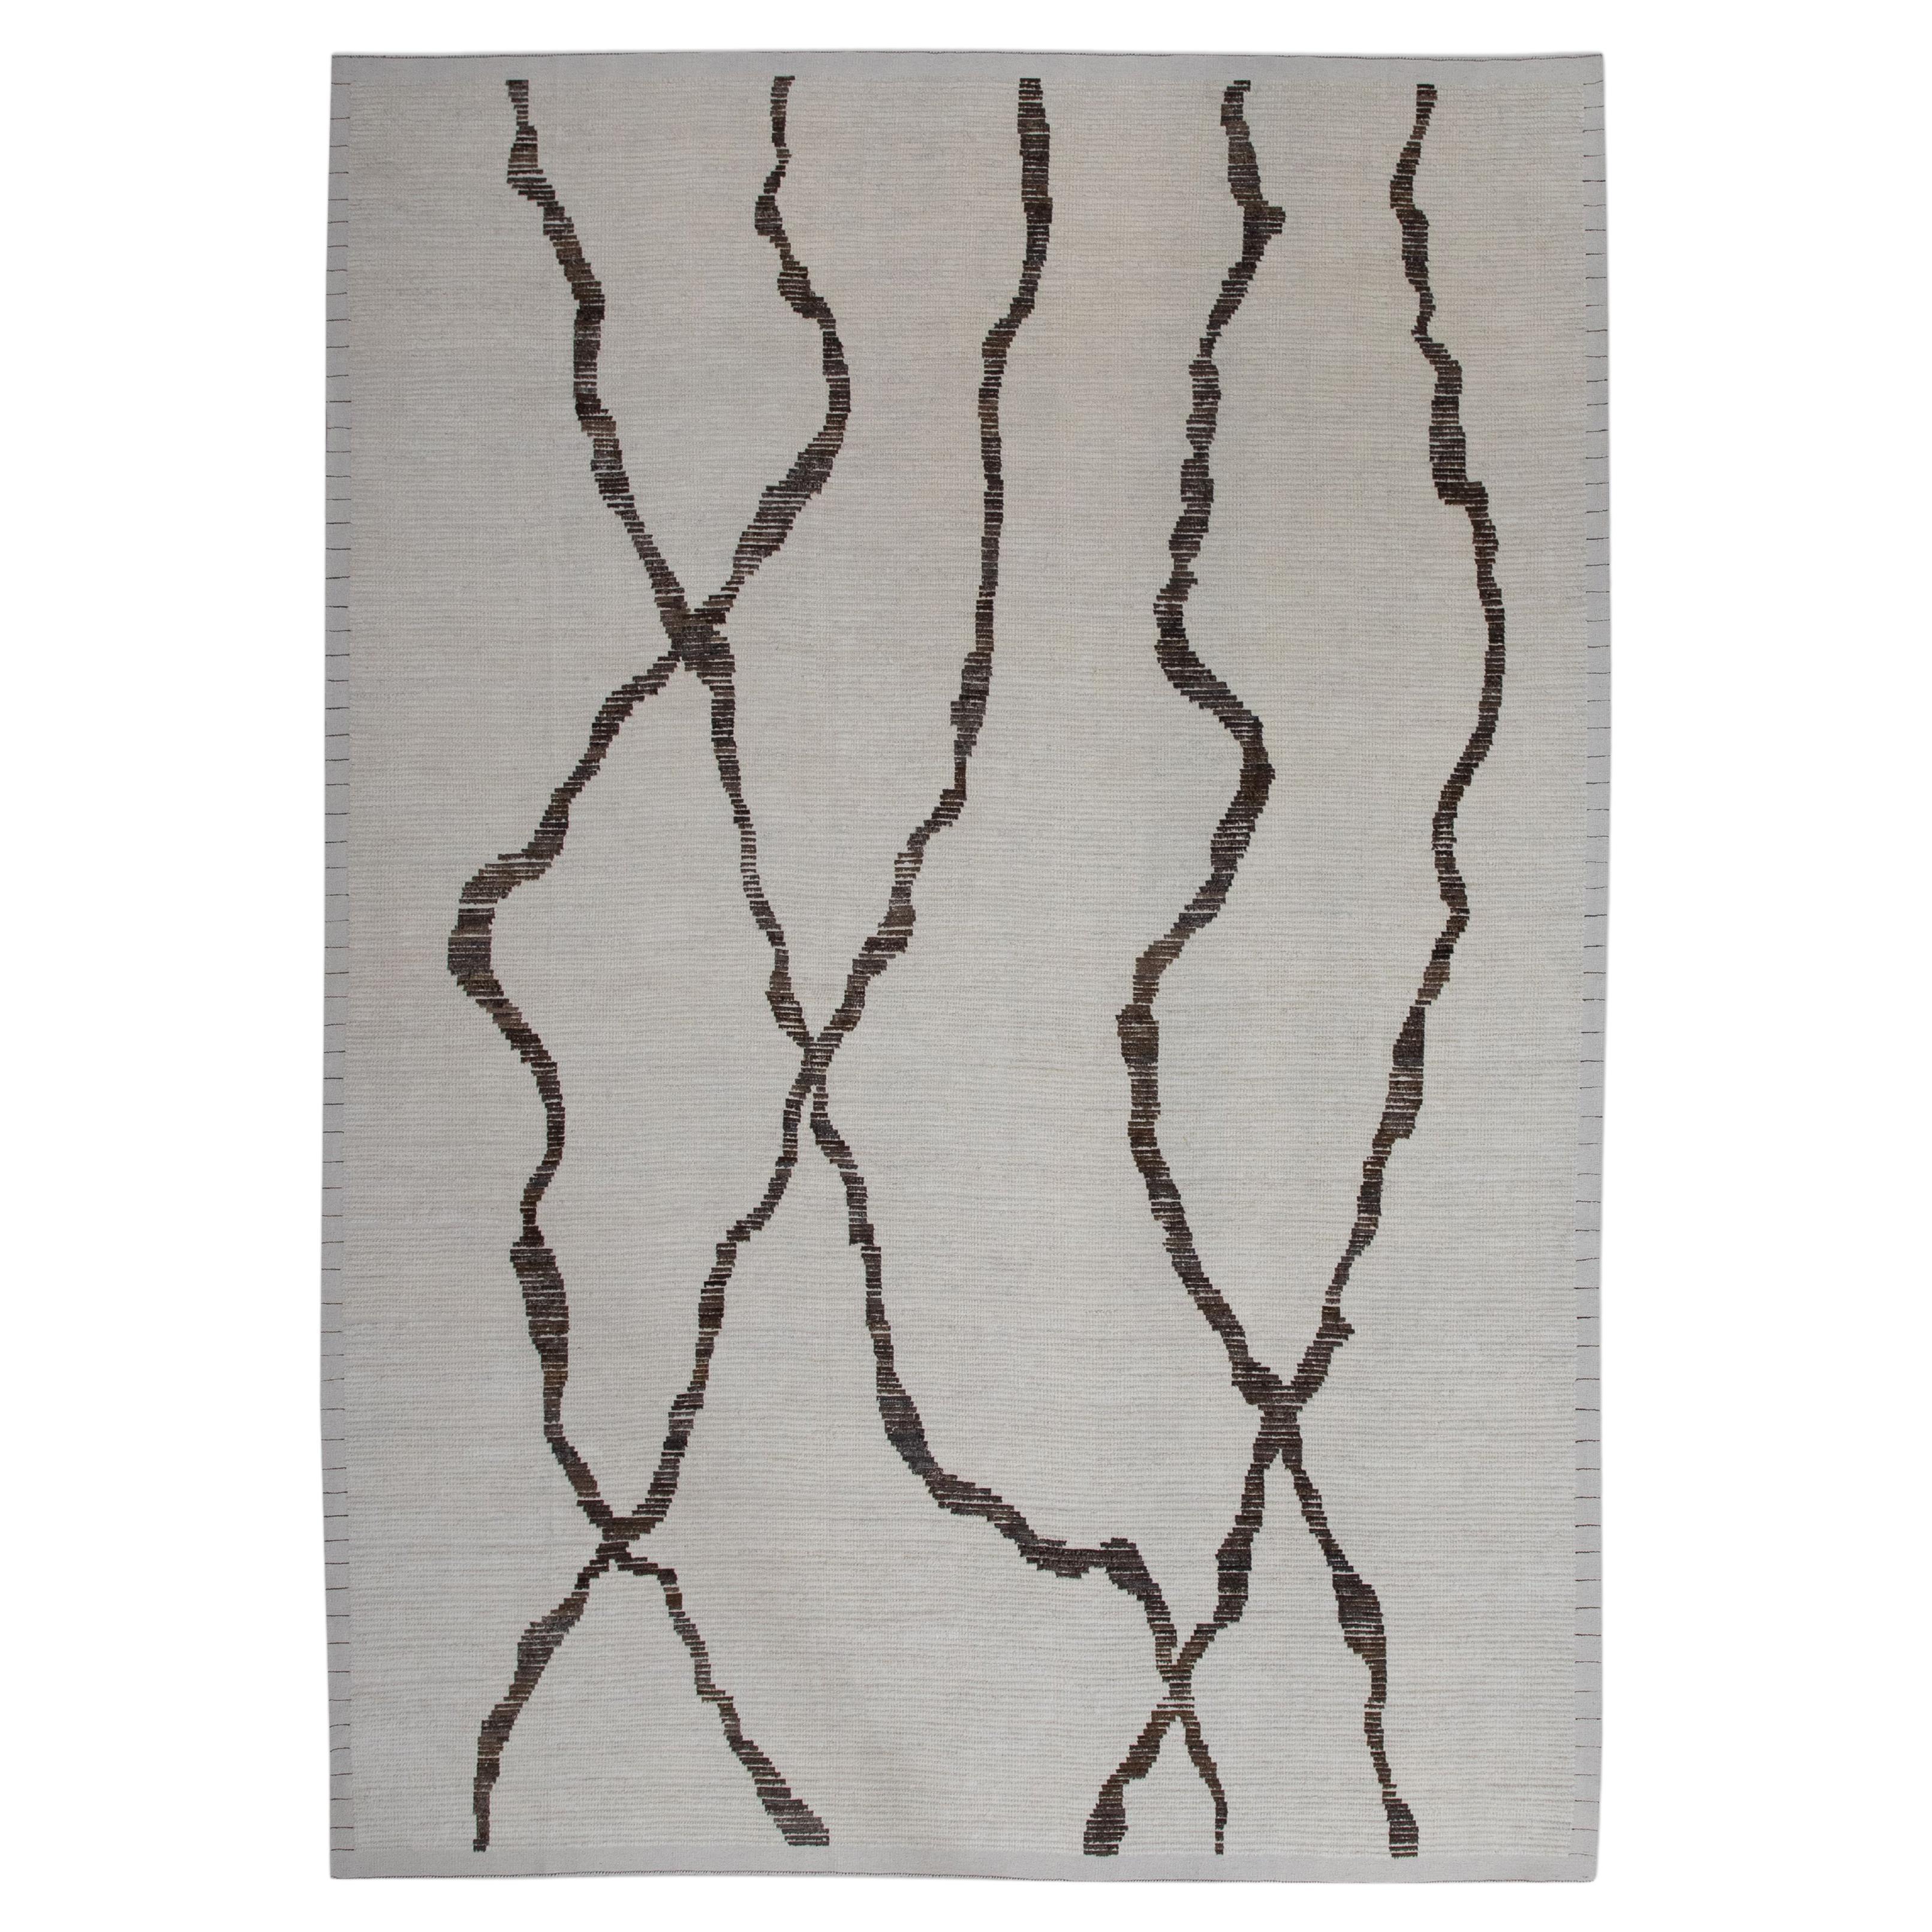  Handmade Wool Tulu Rug in Geometric Design 9'1" x 12'9"